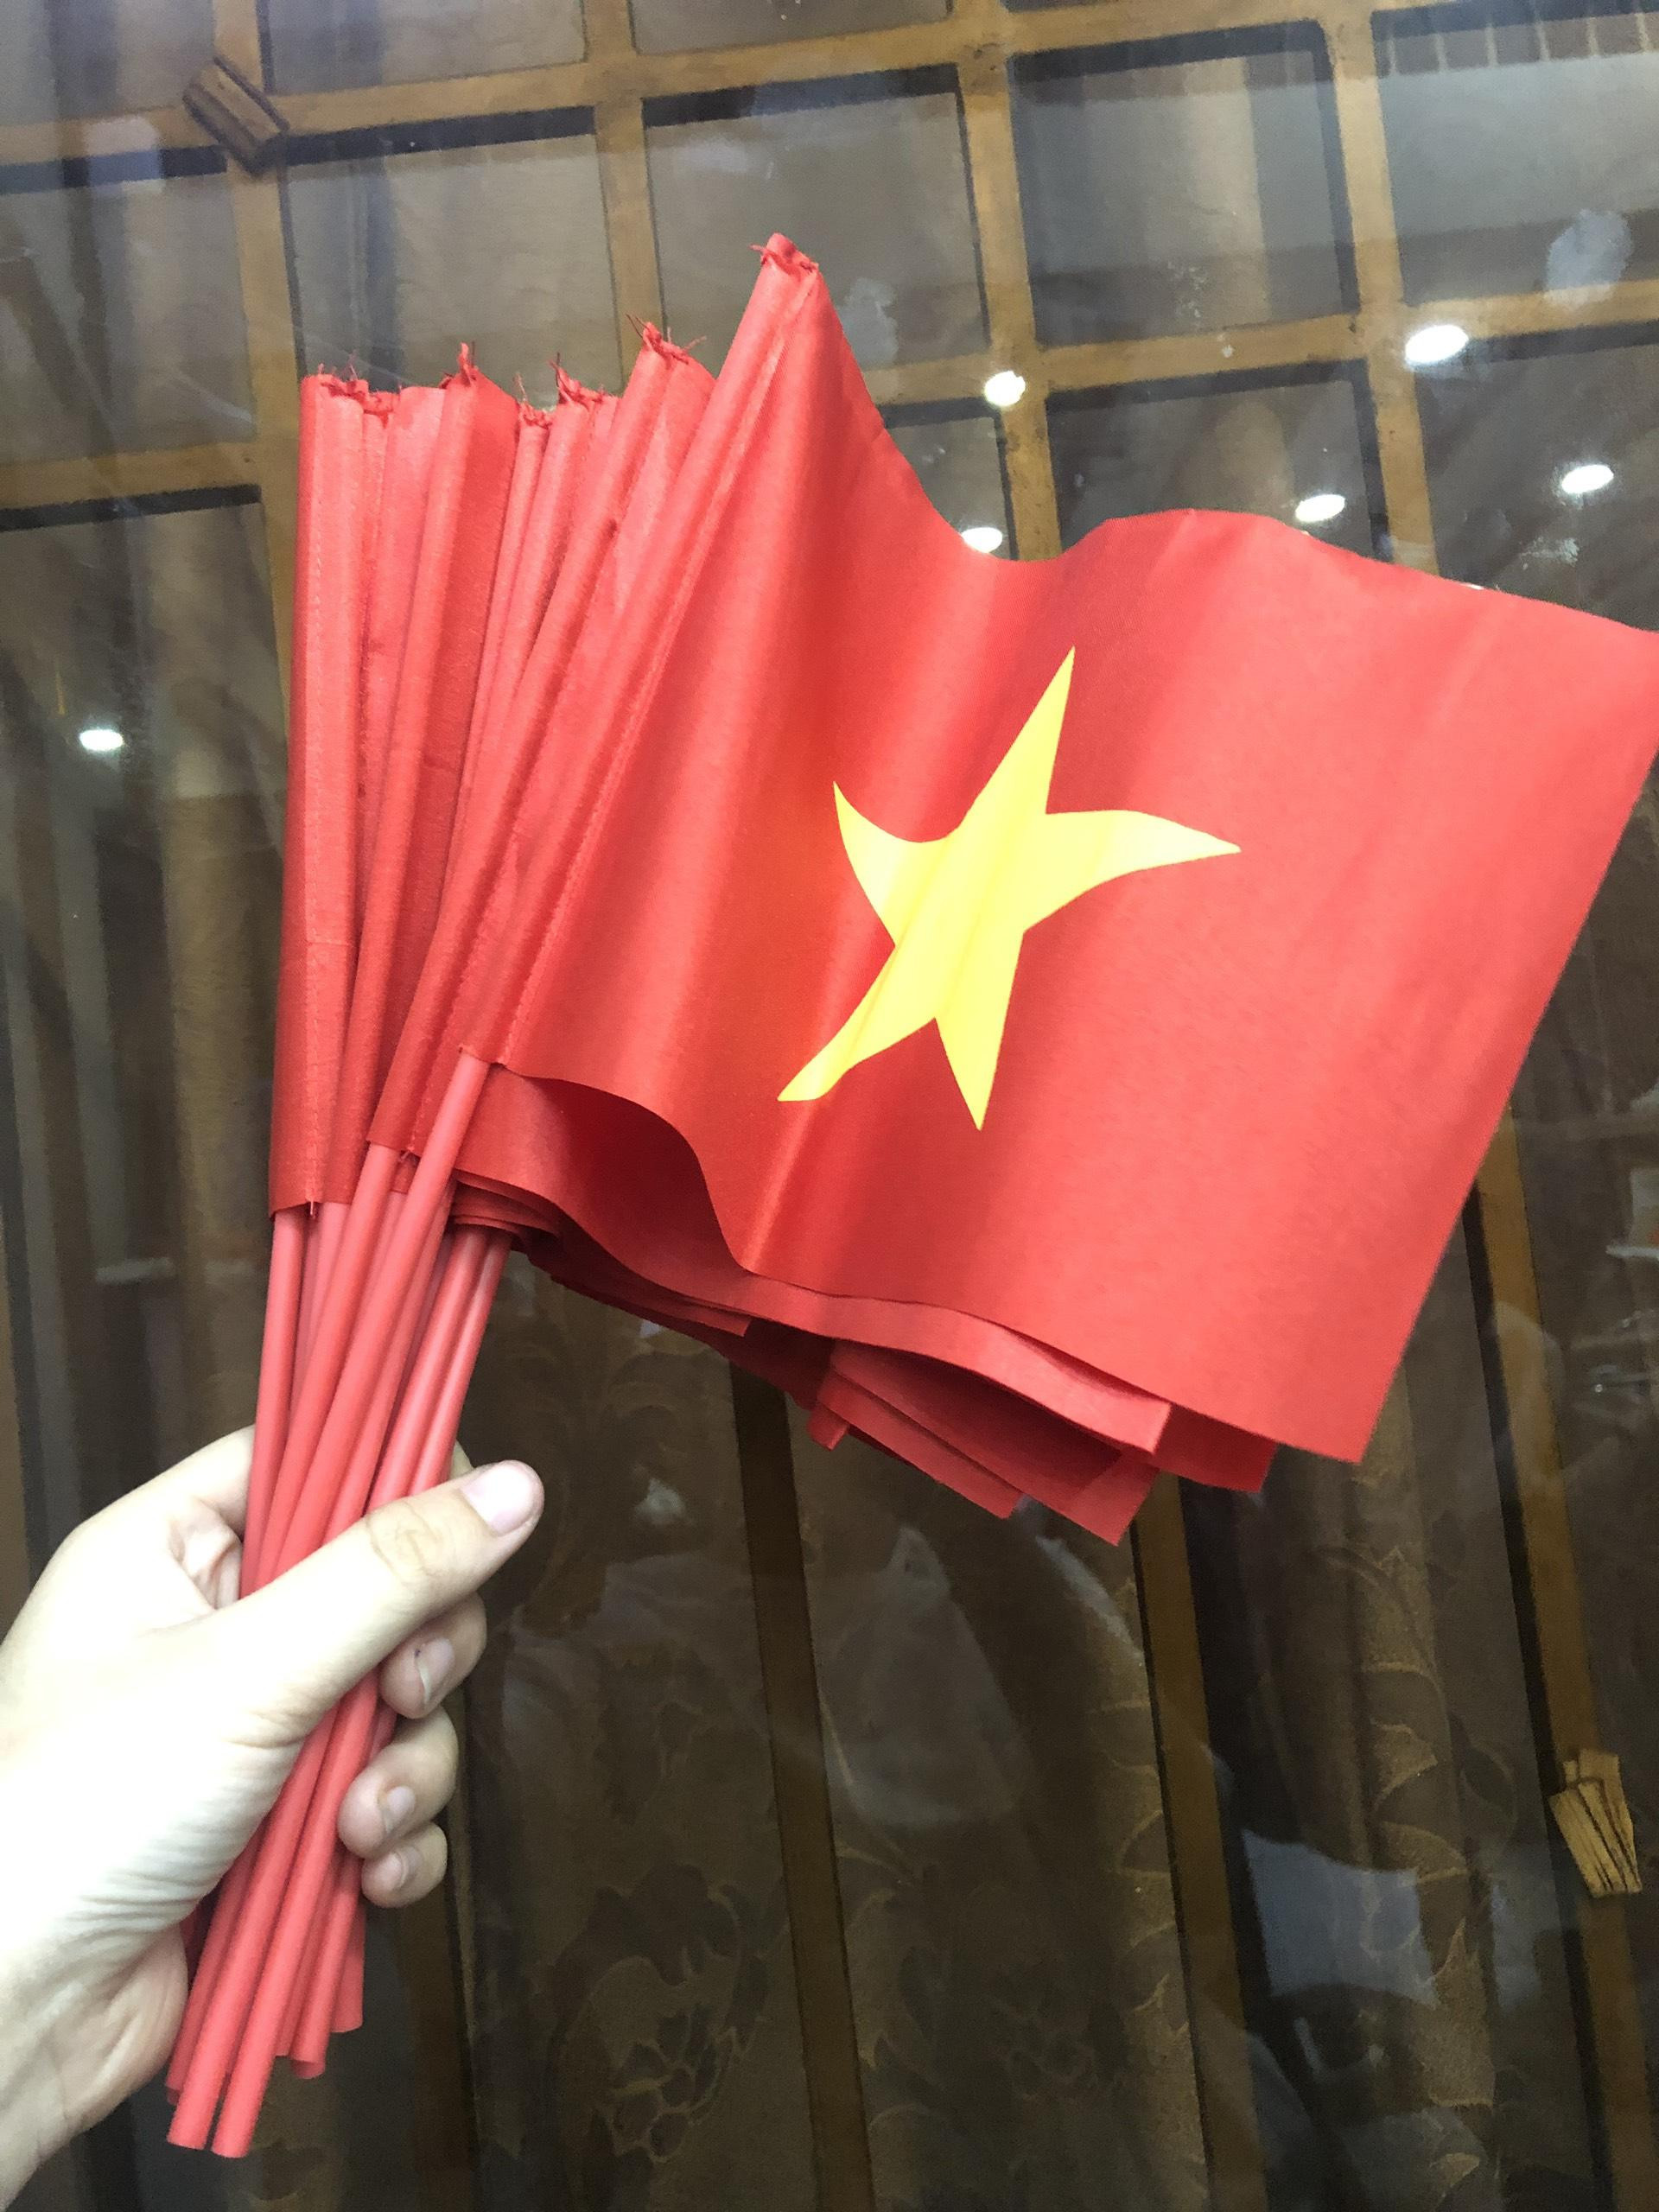 Hãy thể hiện tình yêu quê hương của mình bằng bộ cờ Việt Nam cầm tay đầy tự hào và uy nghiêm. Mẫu cờ tuyệt đẹp này sẽ làm cho mọi người phải ngưỡng mộ và chú ý đến bạn. Đừng bỏ lỡ cơ hội sở hữu bộ cờ Việt Nam cầm tay này đầy ấn tượng để góp phần làm cho Tổ quốc ngày càng vững mạnh hơn.